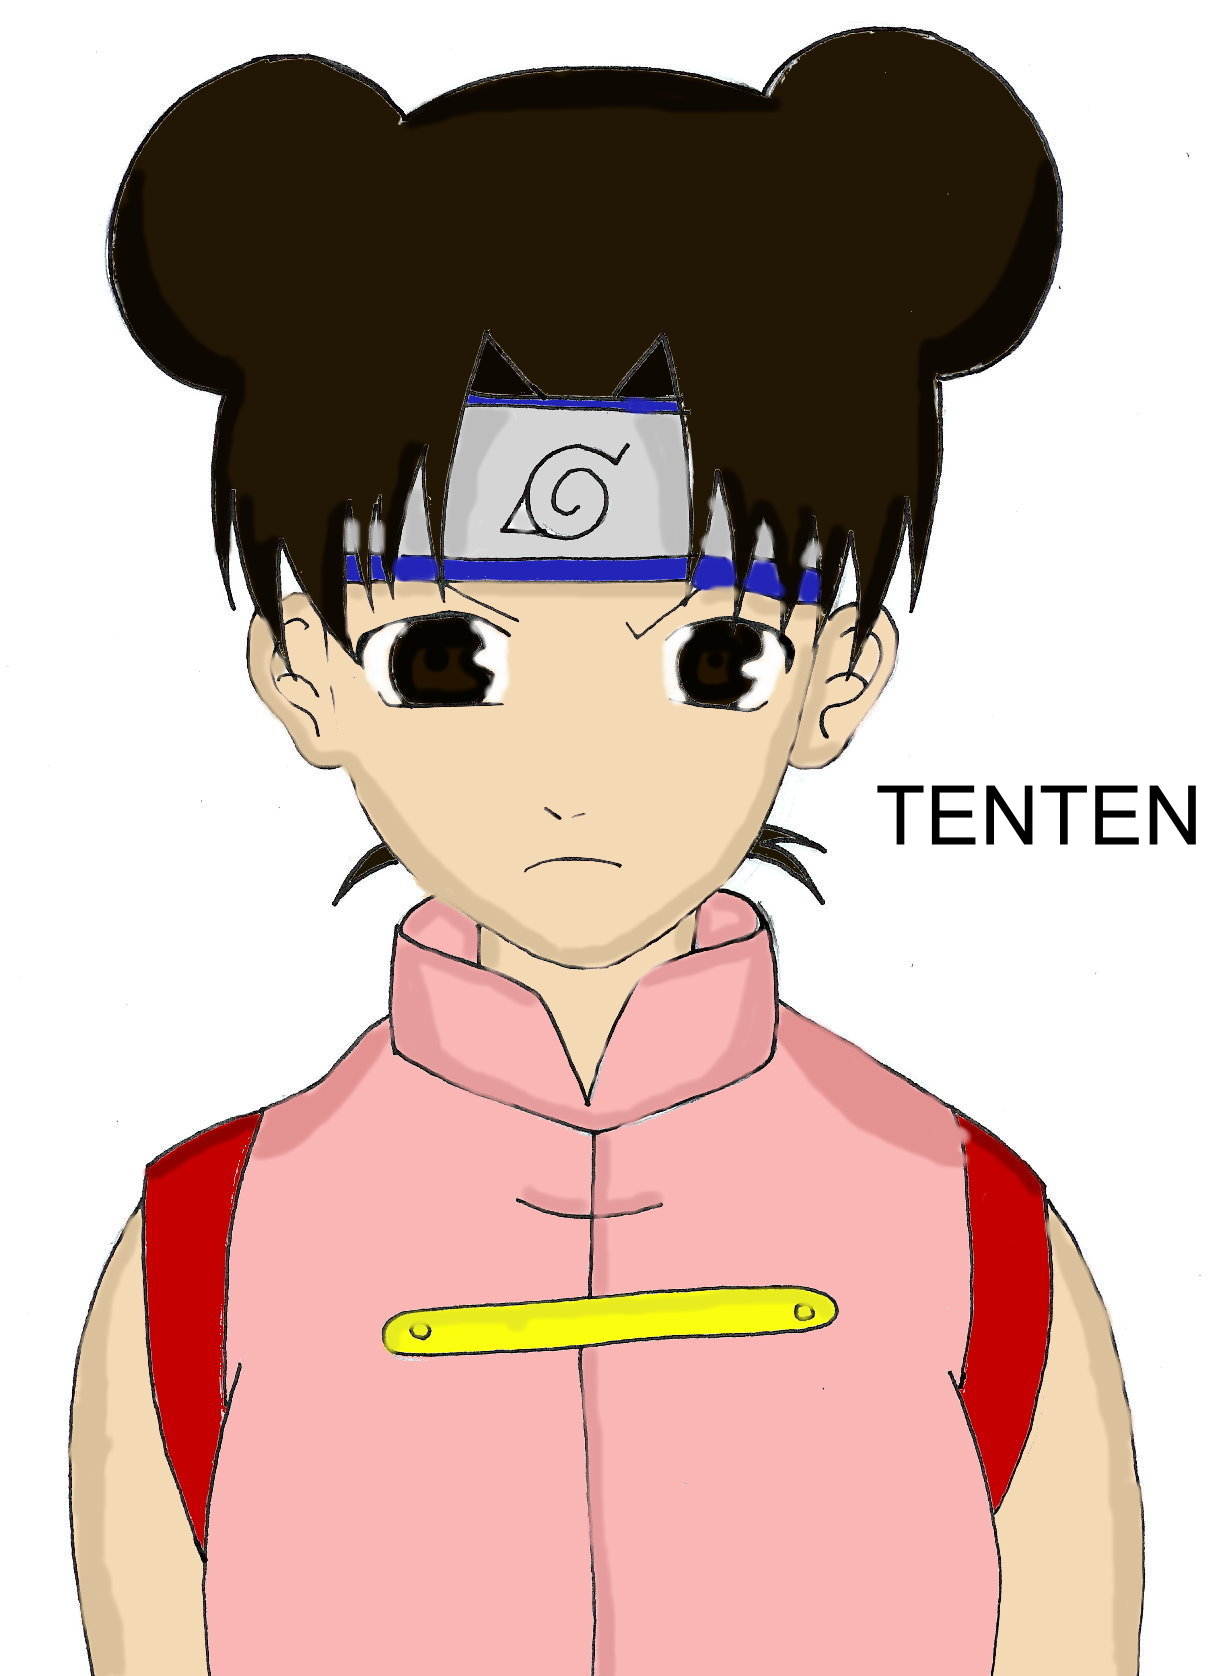 TenTen (photoshop) by InvaderAvatarTitan13